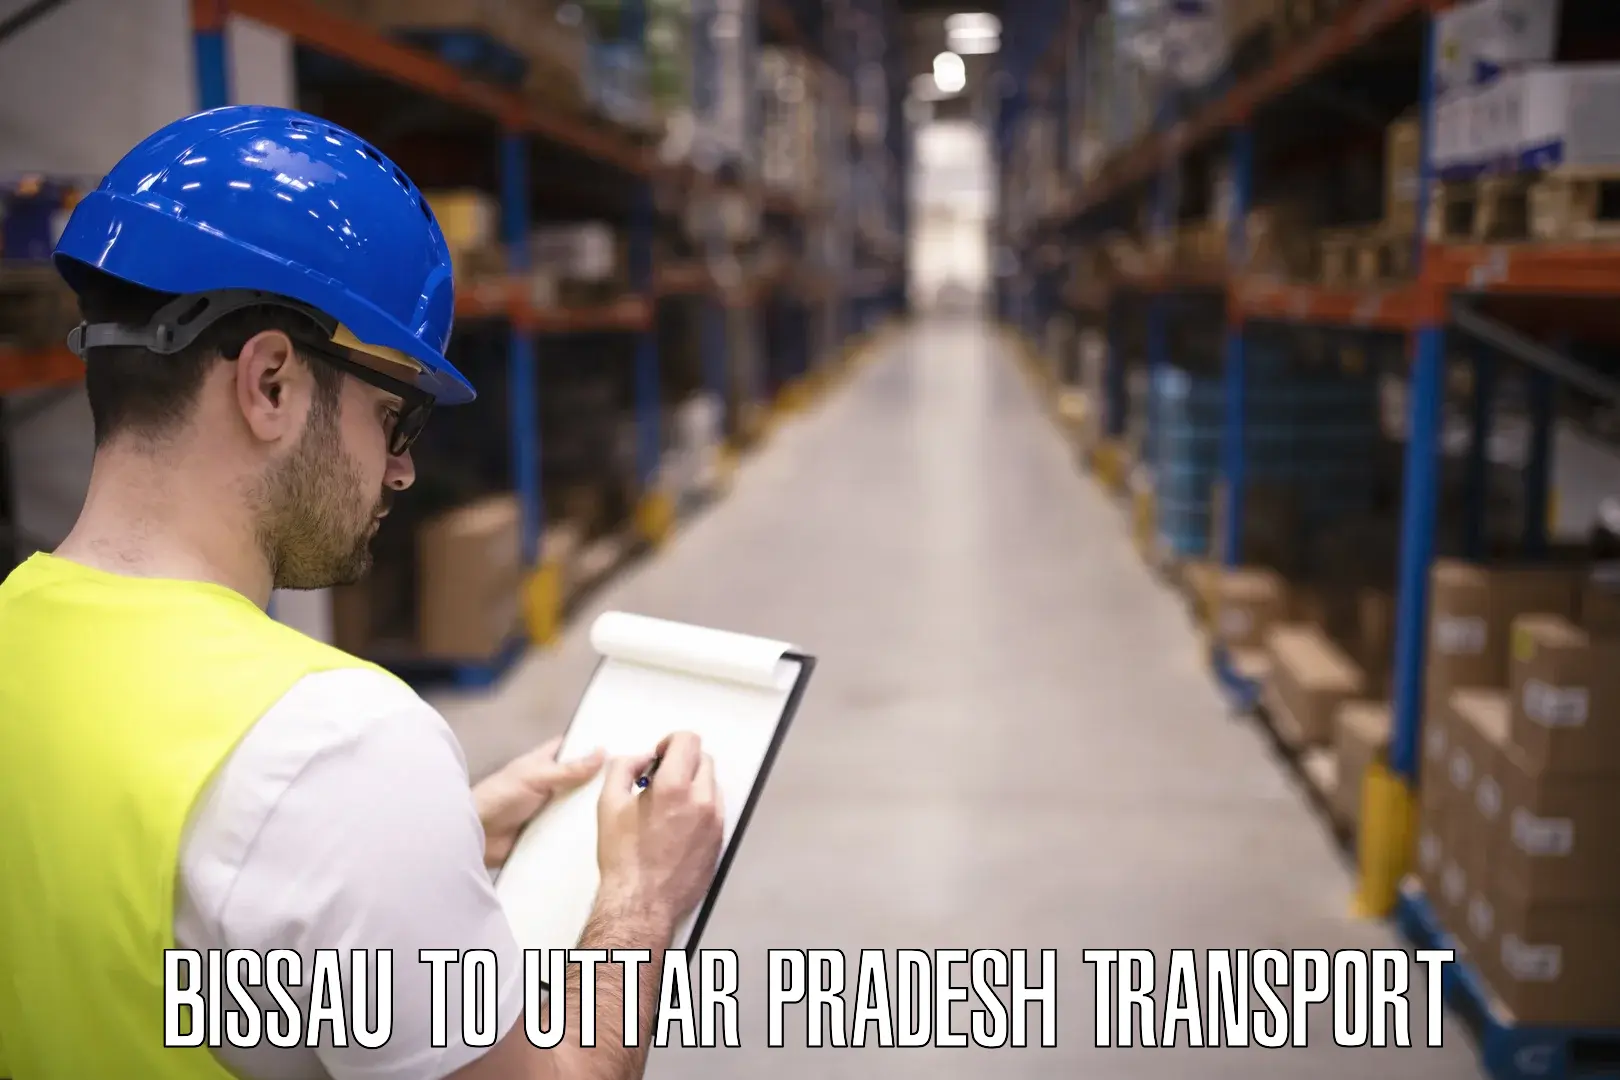 Container transportation services Bissau to Uttar Pradesh